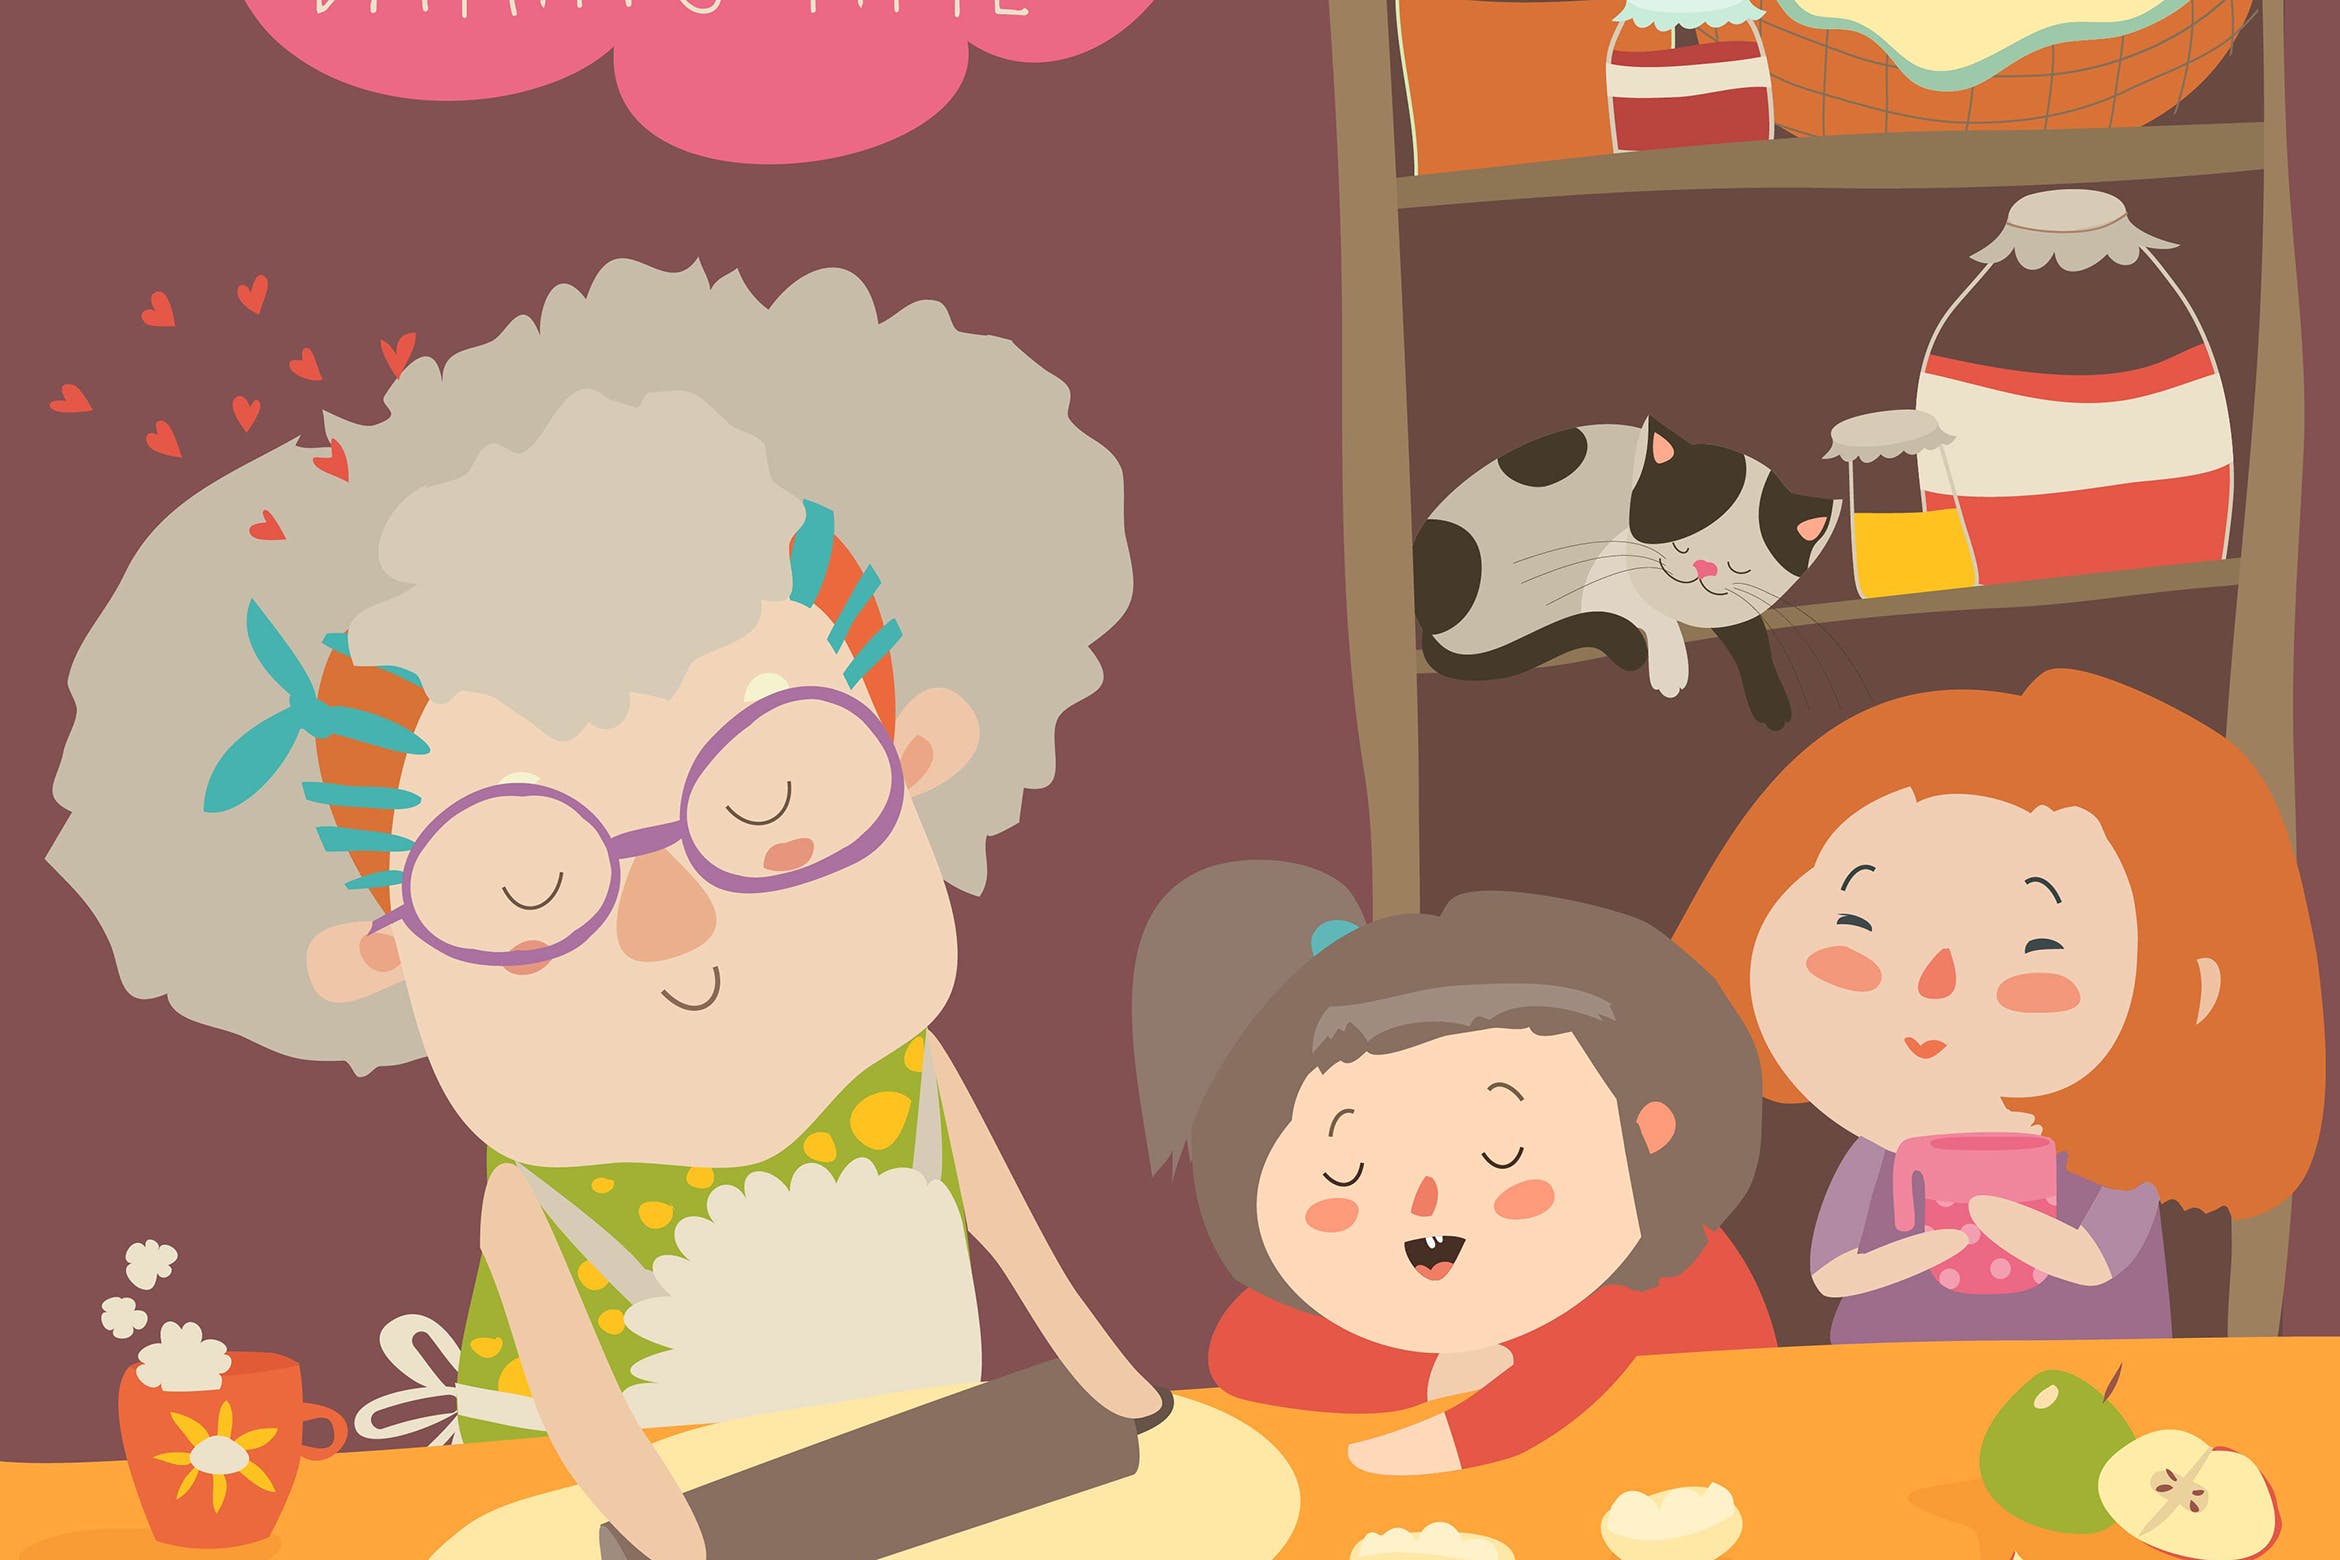 家庭烘培亲子活动场景矢量插画素材 Grandmother and kids bake together at a kitchen.插图